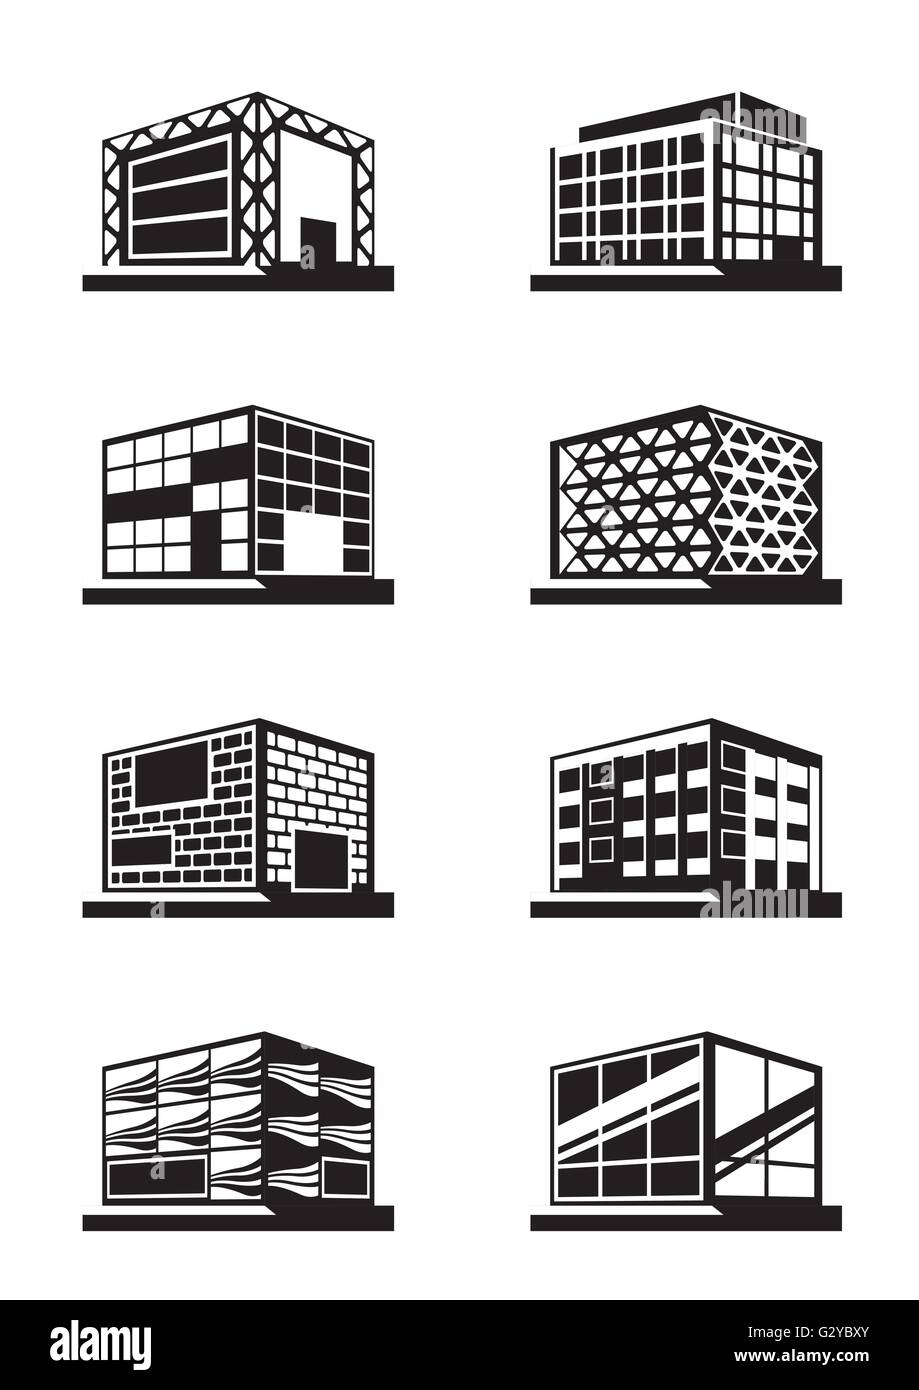 Unterschiedliche Fassaden von Gebäuden - Vektor-illustration Stock Vektor